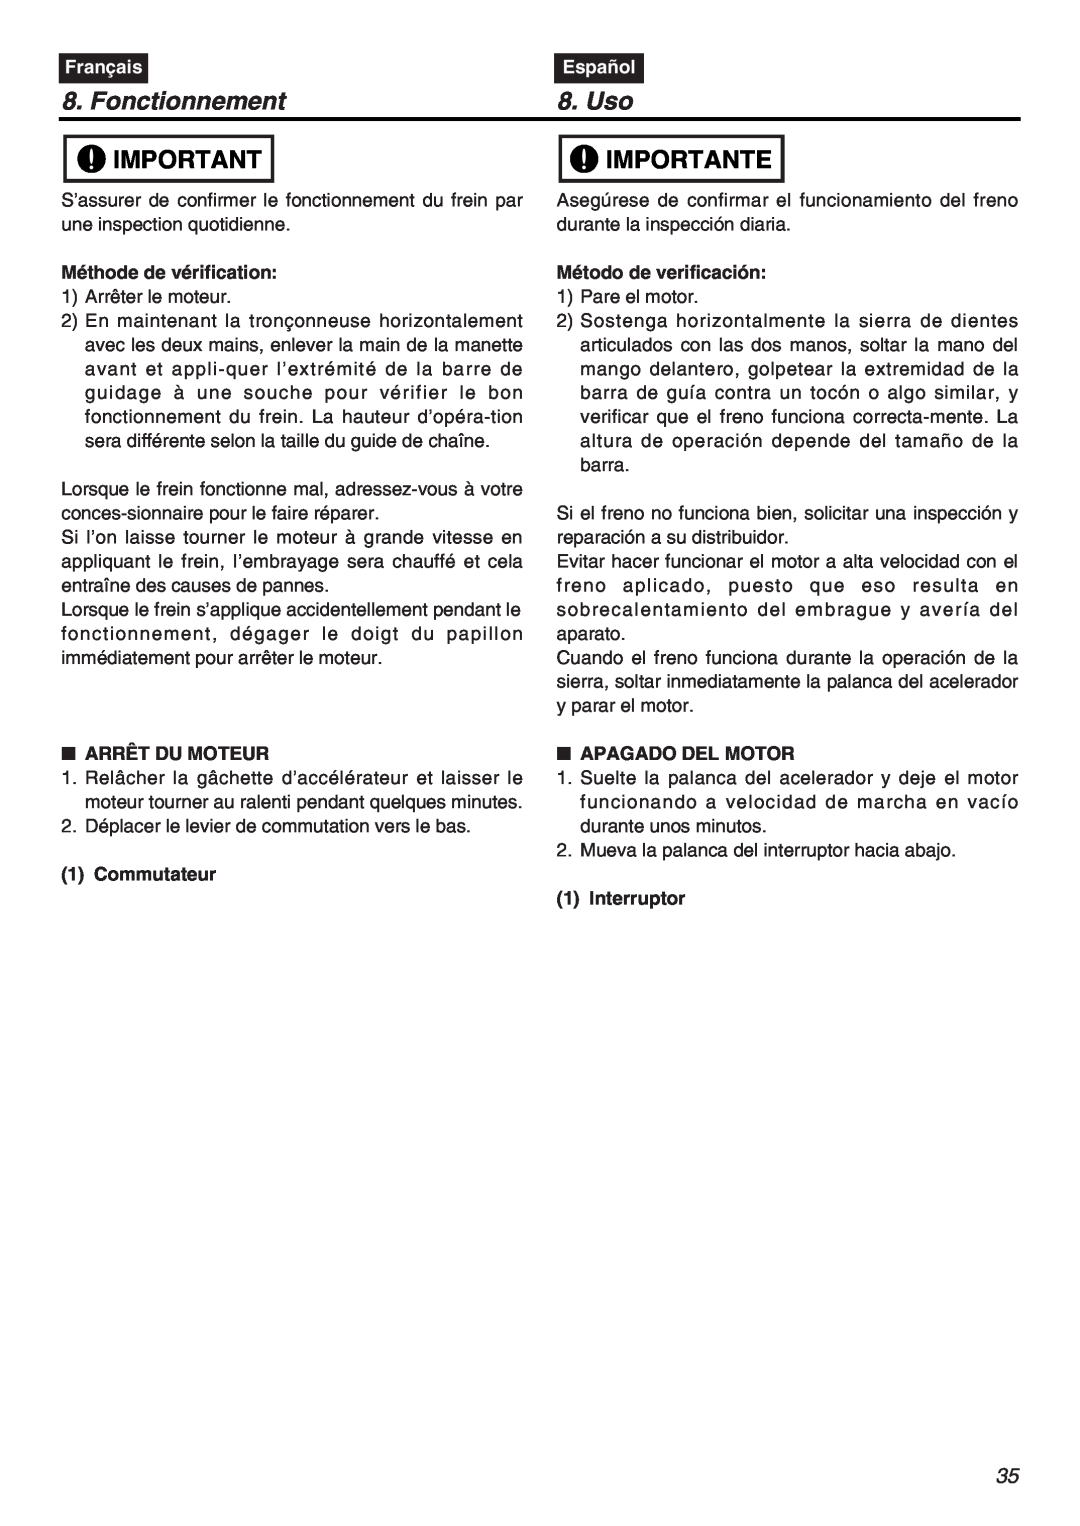 RedMax G5000AVS manual Fonctionnement, Uso, Importante, Français, Español 